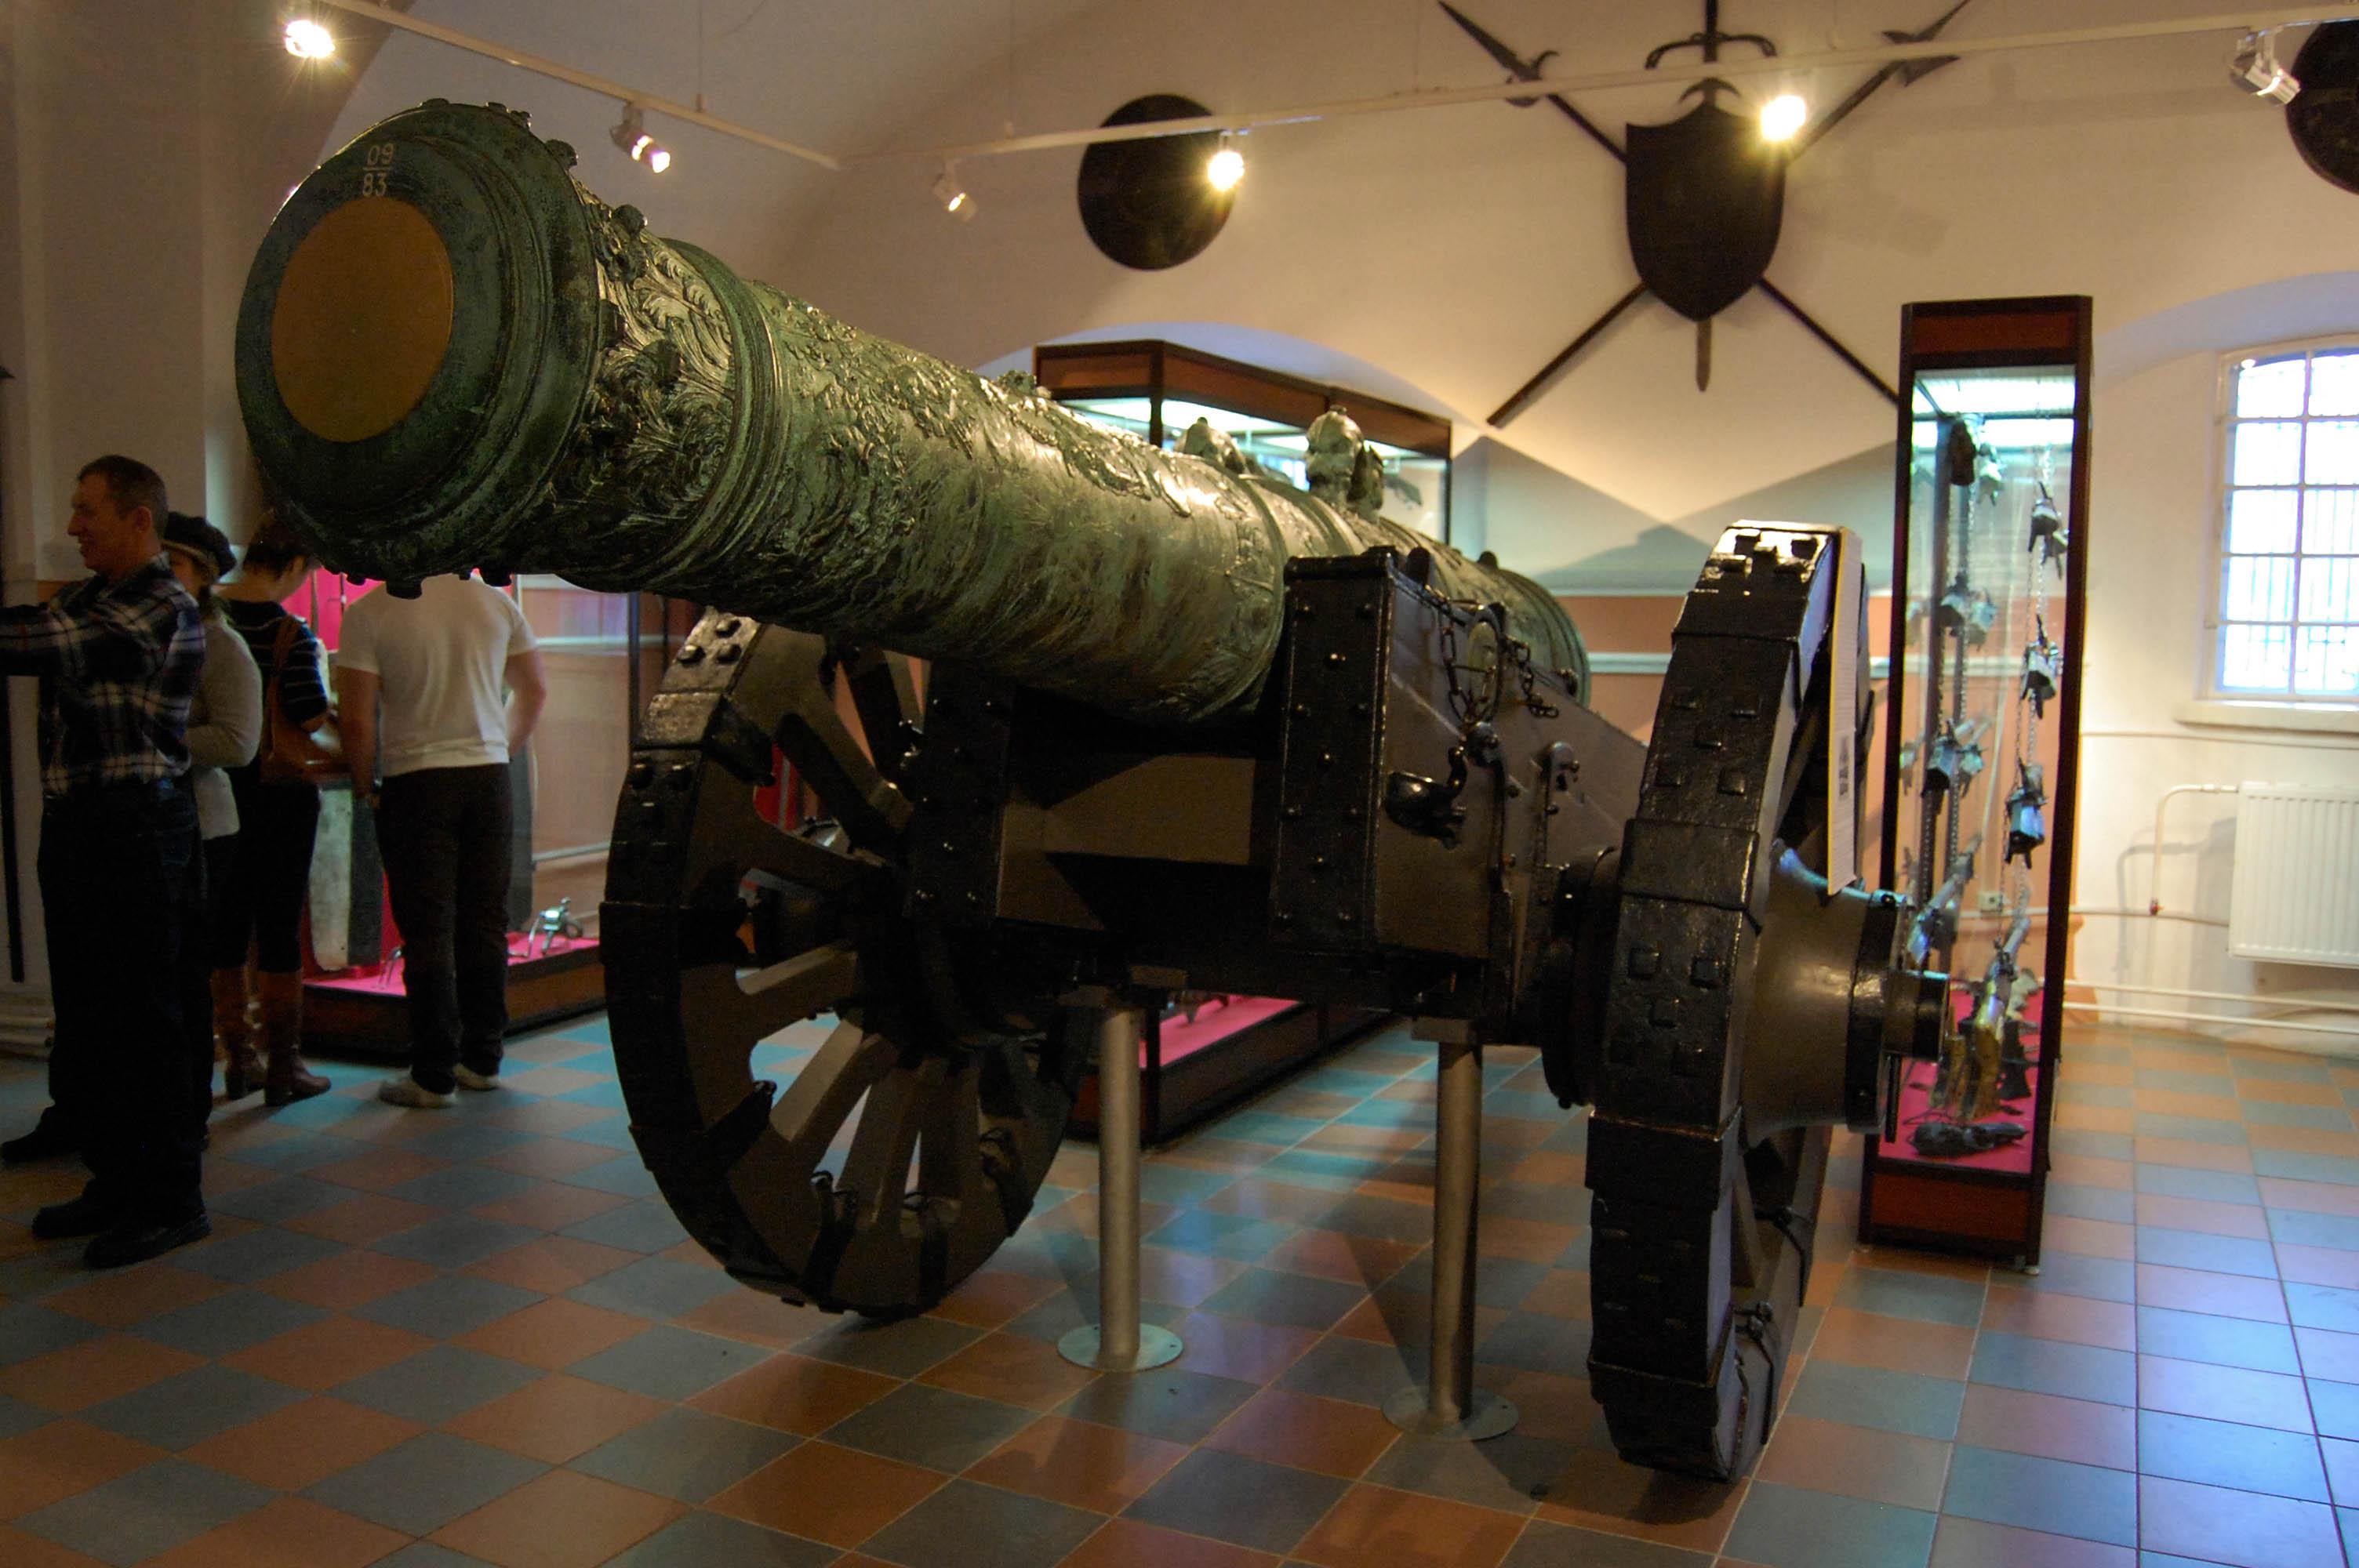 Фото Военно-исторический музей артиллерии, инженерных войск и войск связи